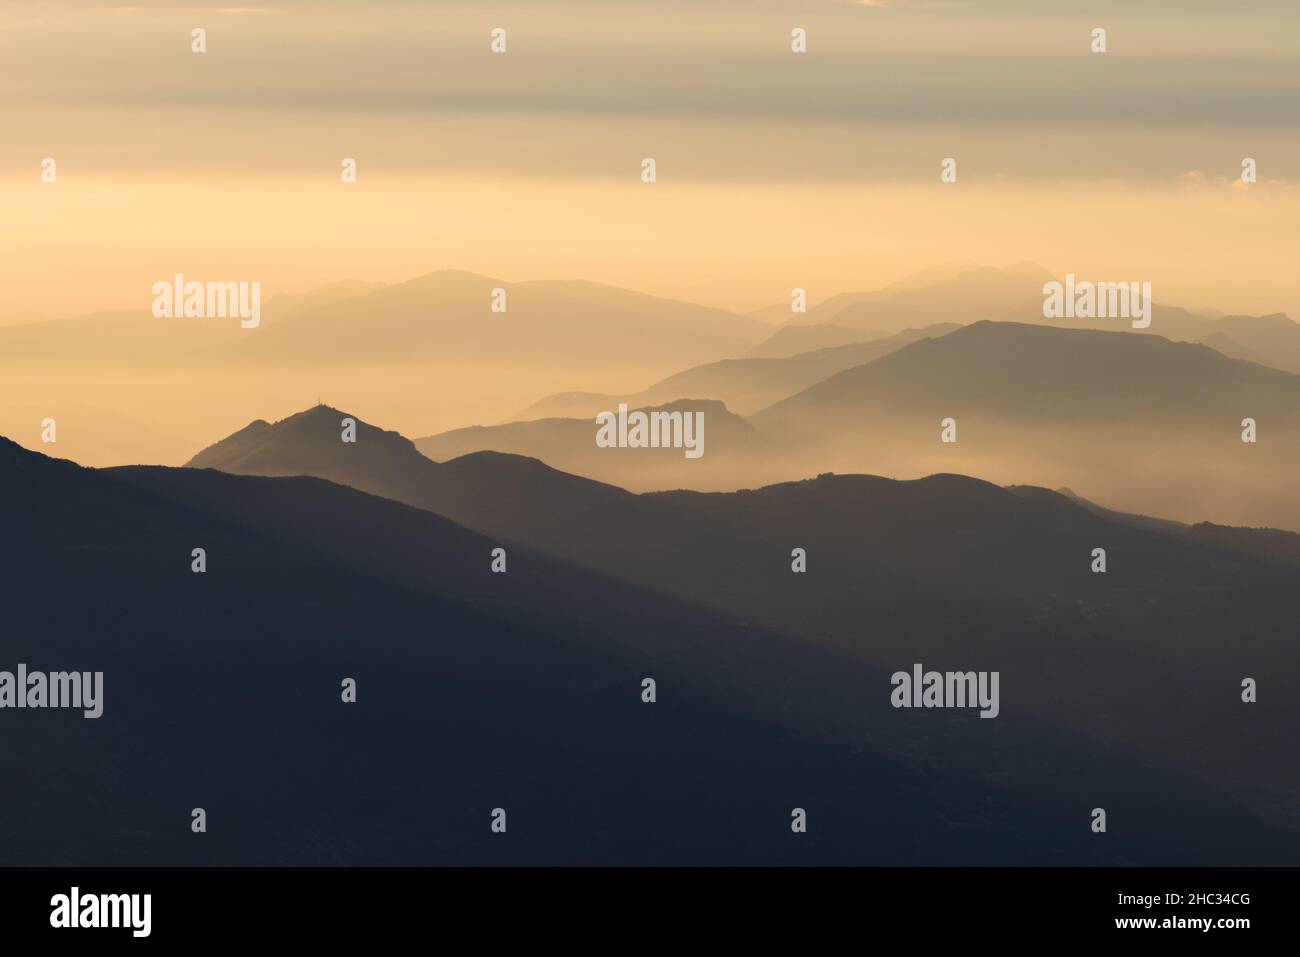 vue depuis le sommet du mont ventoux lors d'un lever de Soleil Stockfoto